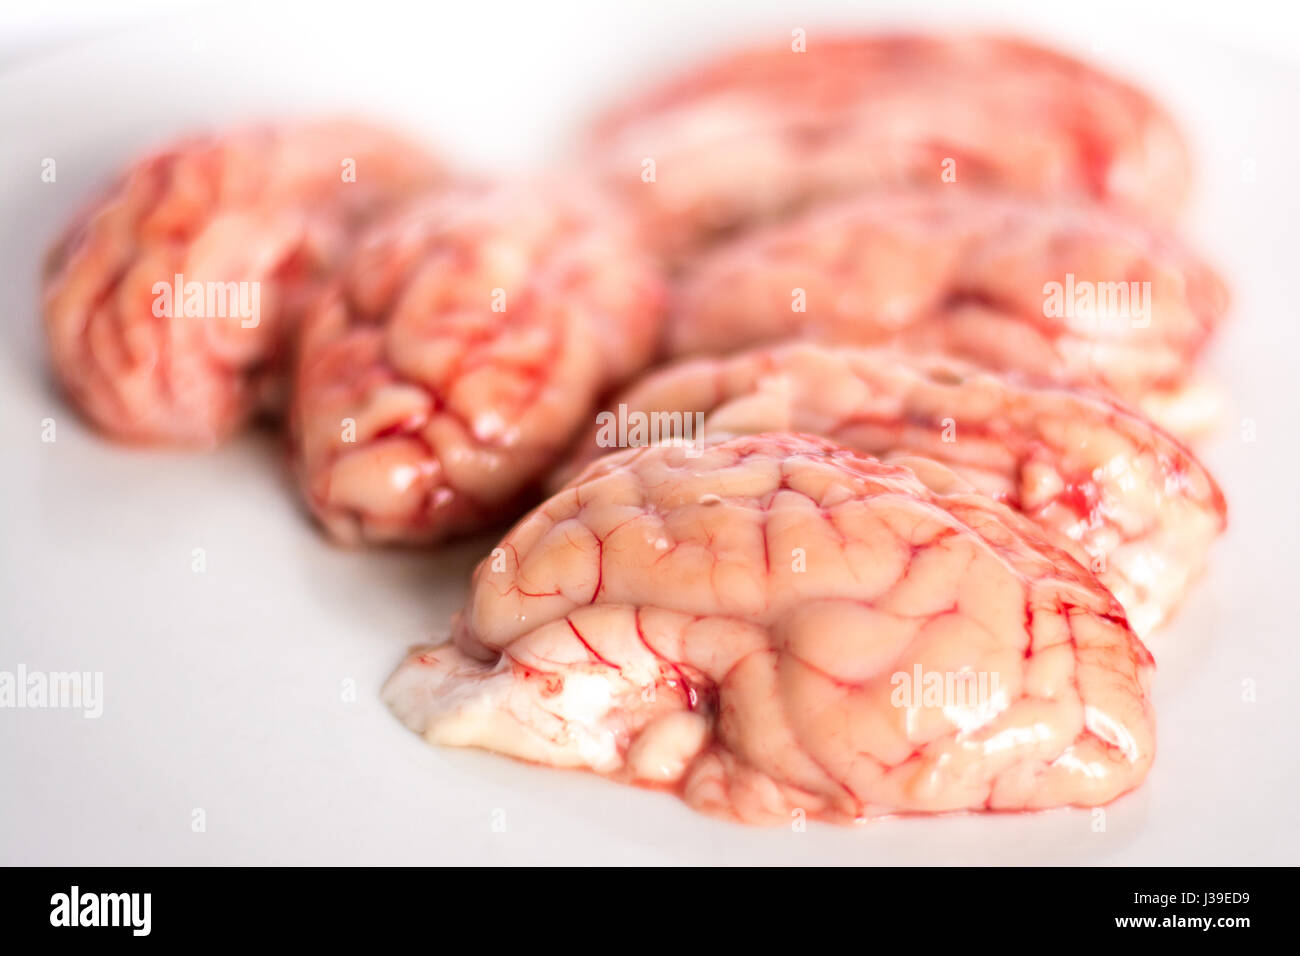 Nahaufnahme von einem Gehirn auf weißem Hintergrund Stockfoto